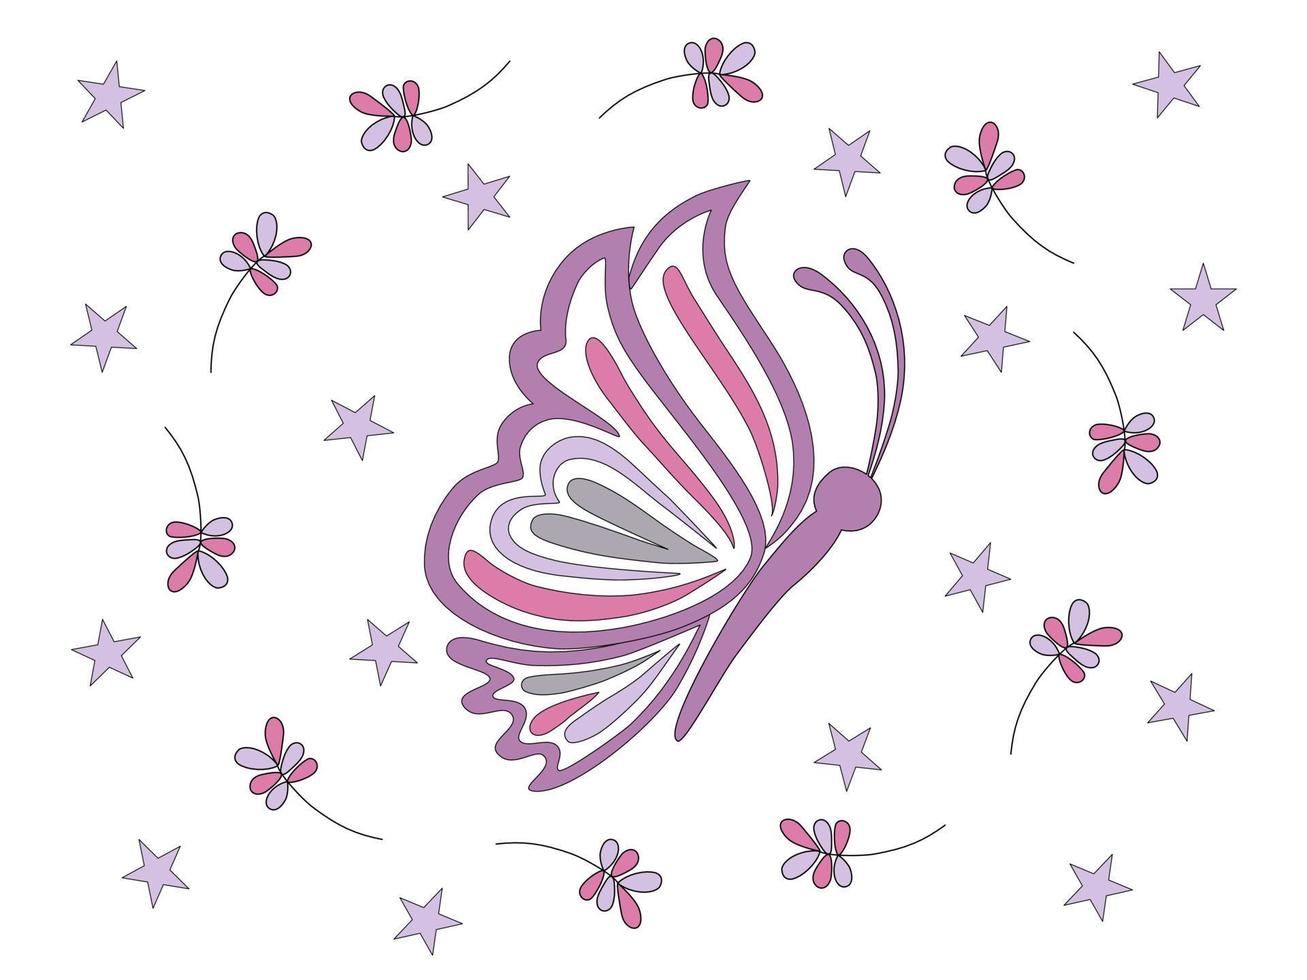 samling av fjärilar i pastellfärger designade i doodle-stil vektor